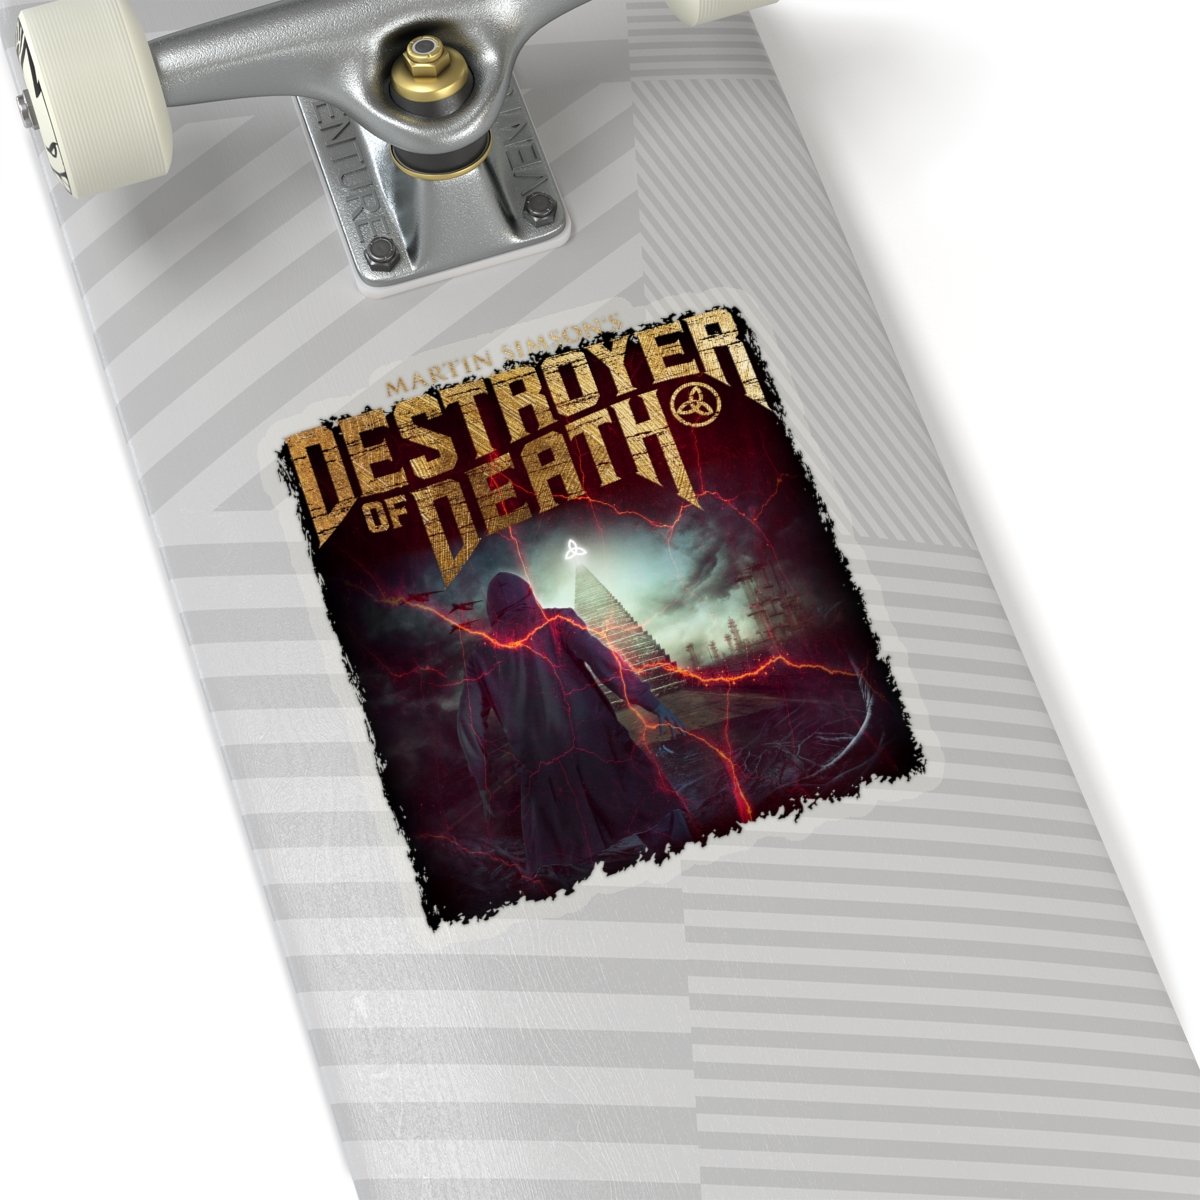 Martin Simson’s Destroyer of Death Die Cut Stickers